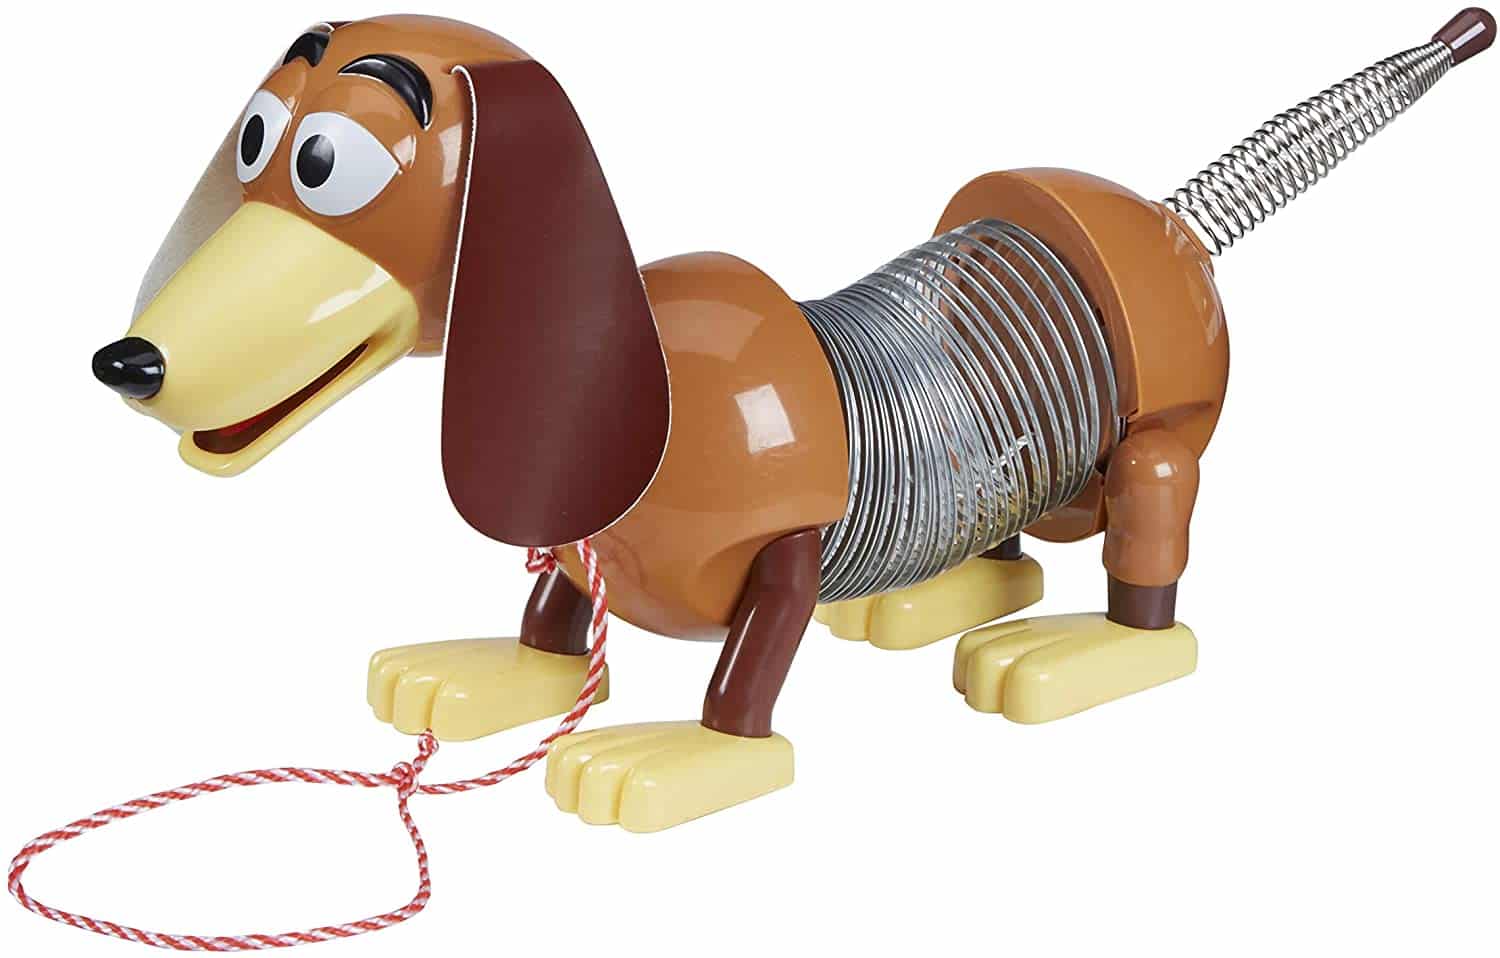 Slinky Disney Pixar Toy Story 4 Dog Kids Pull Spring Toy $9.00 (REG $14.92)